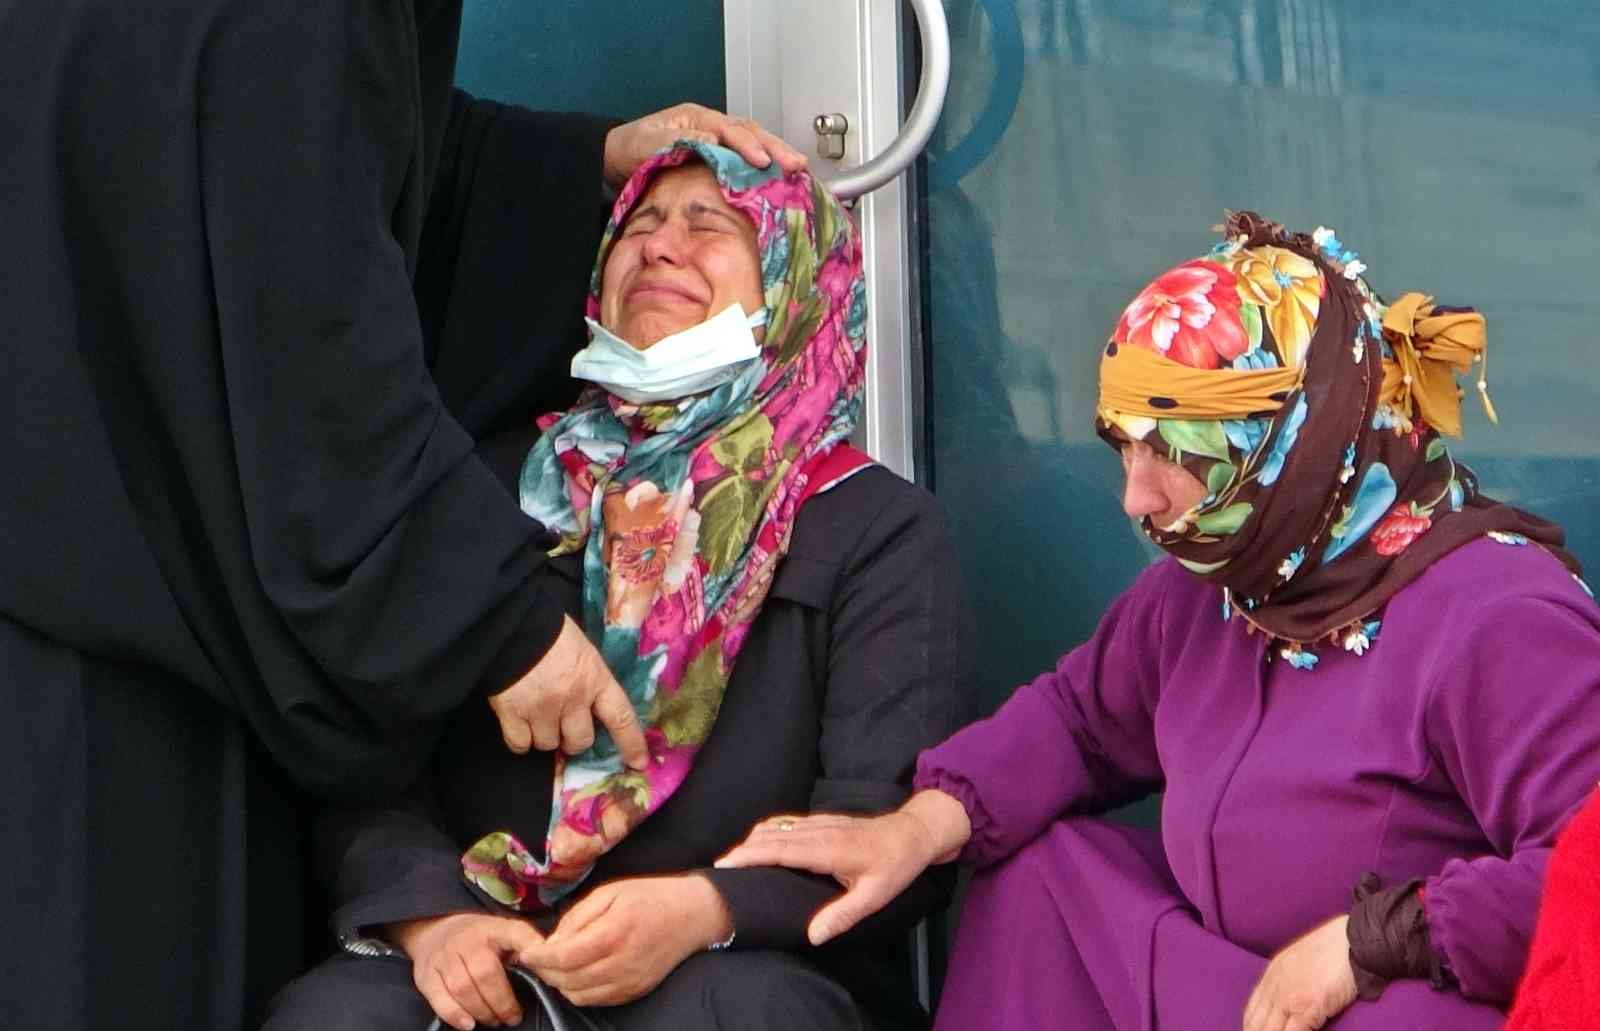 Seyretmek için gittiği dalgalar 4 çocuk annesi kadının sonu oldu #antalya